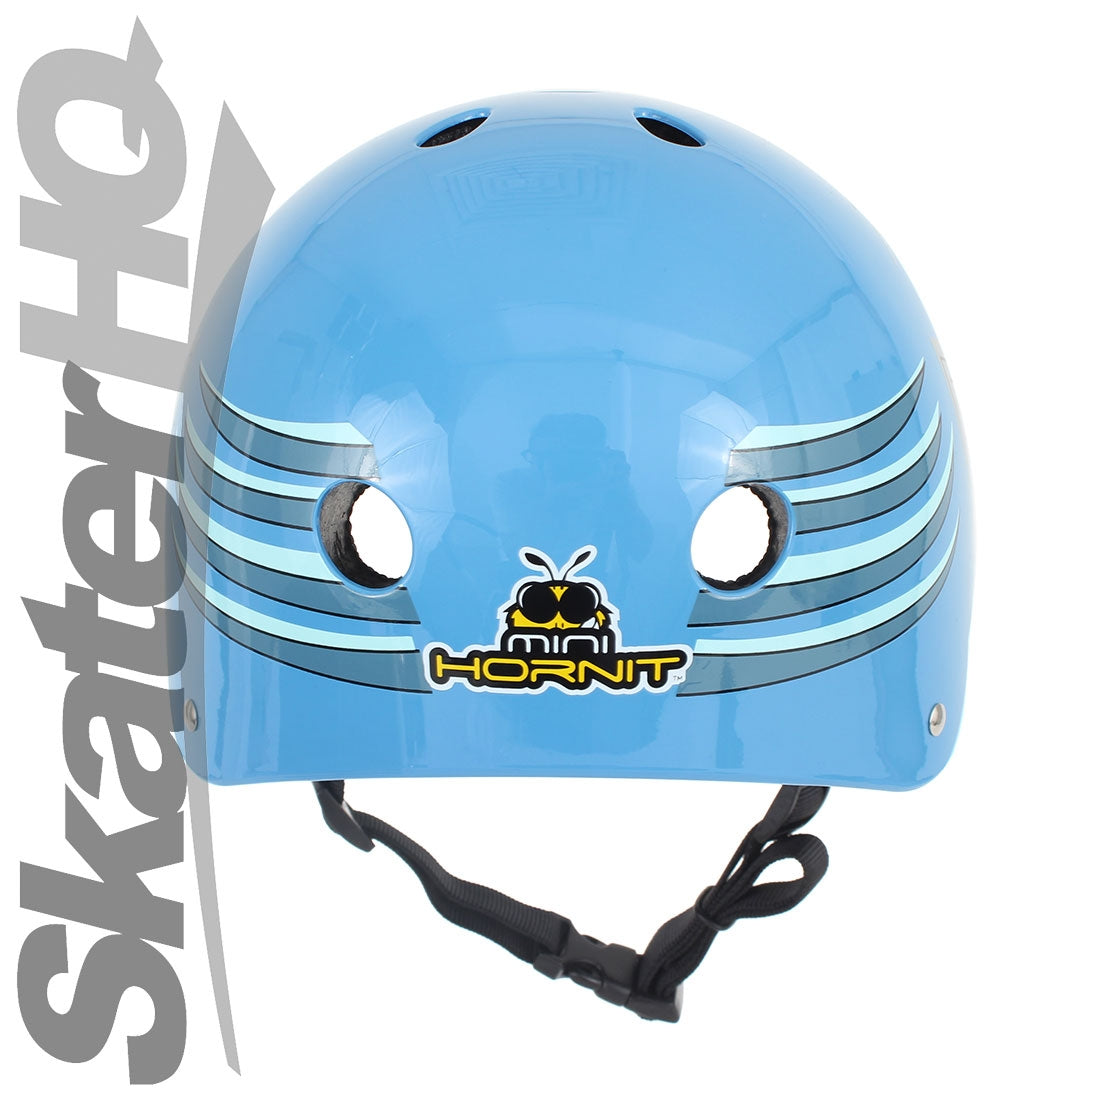 Hornit Lids Hammerhead Helmet - Medium Helmets